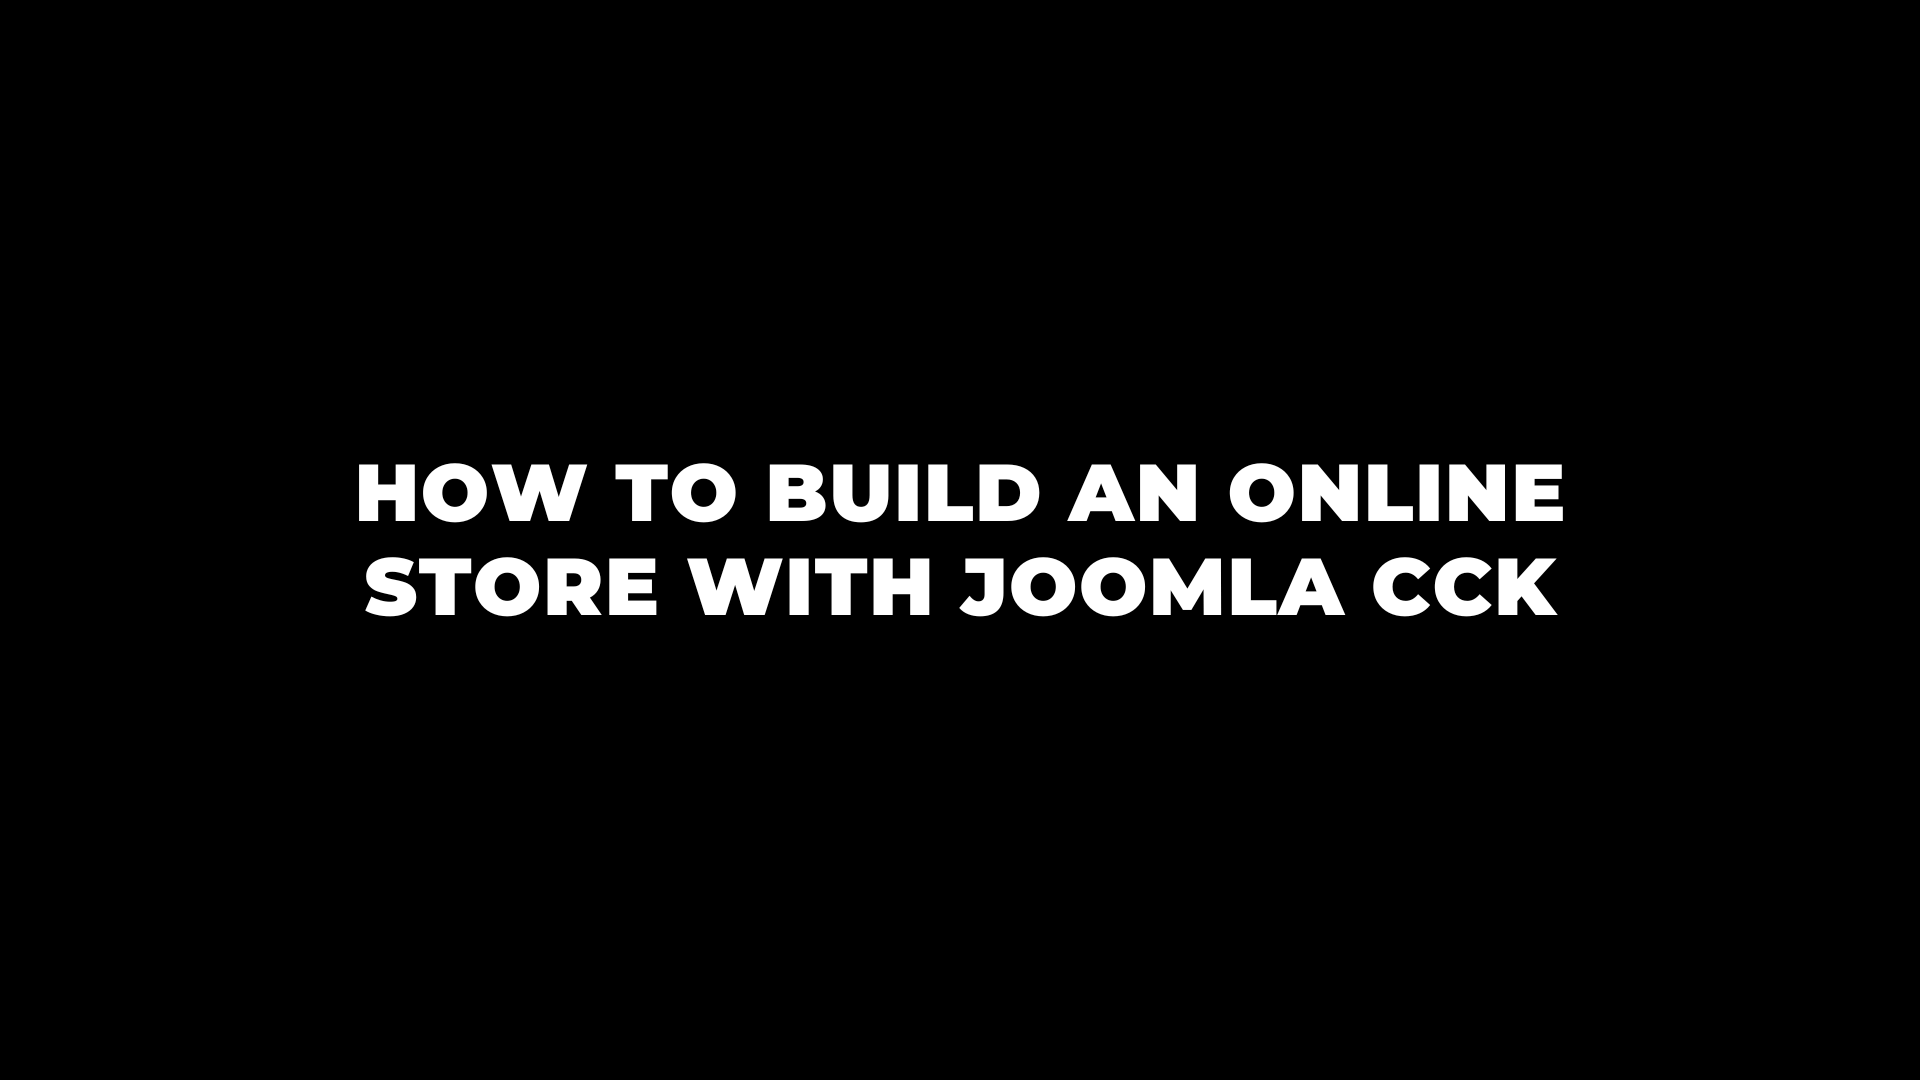 Joomla News: How to build an online store with Joomla CCK